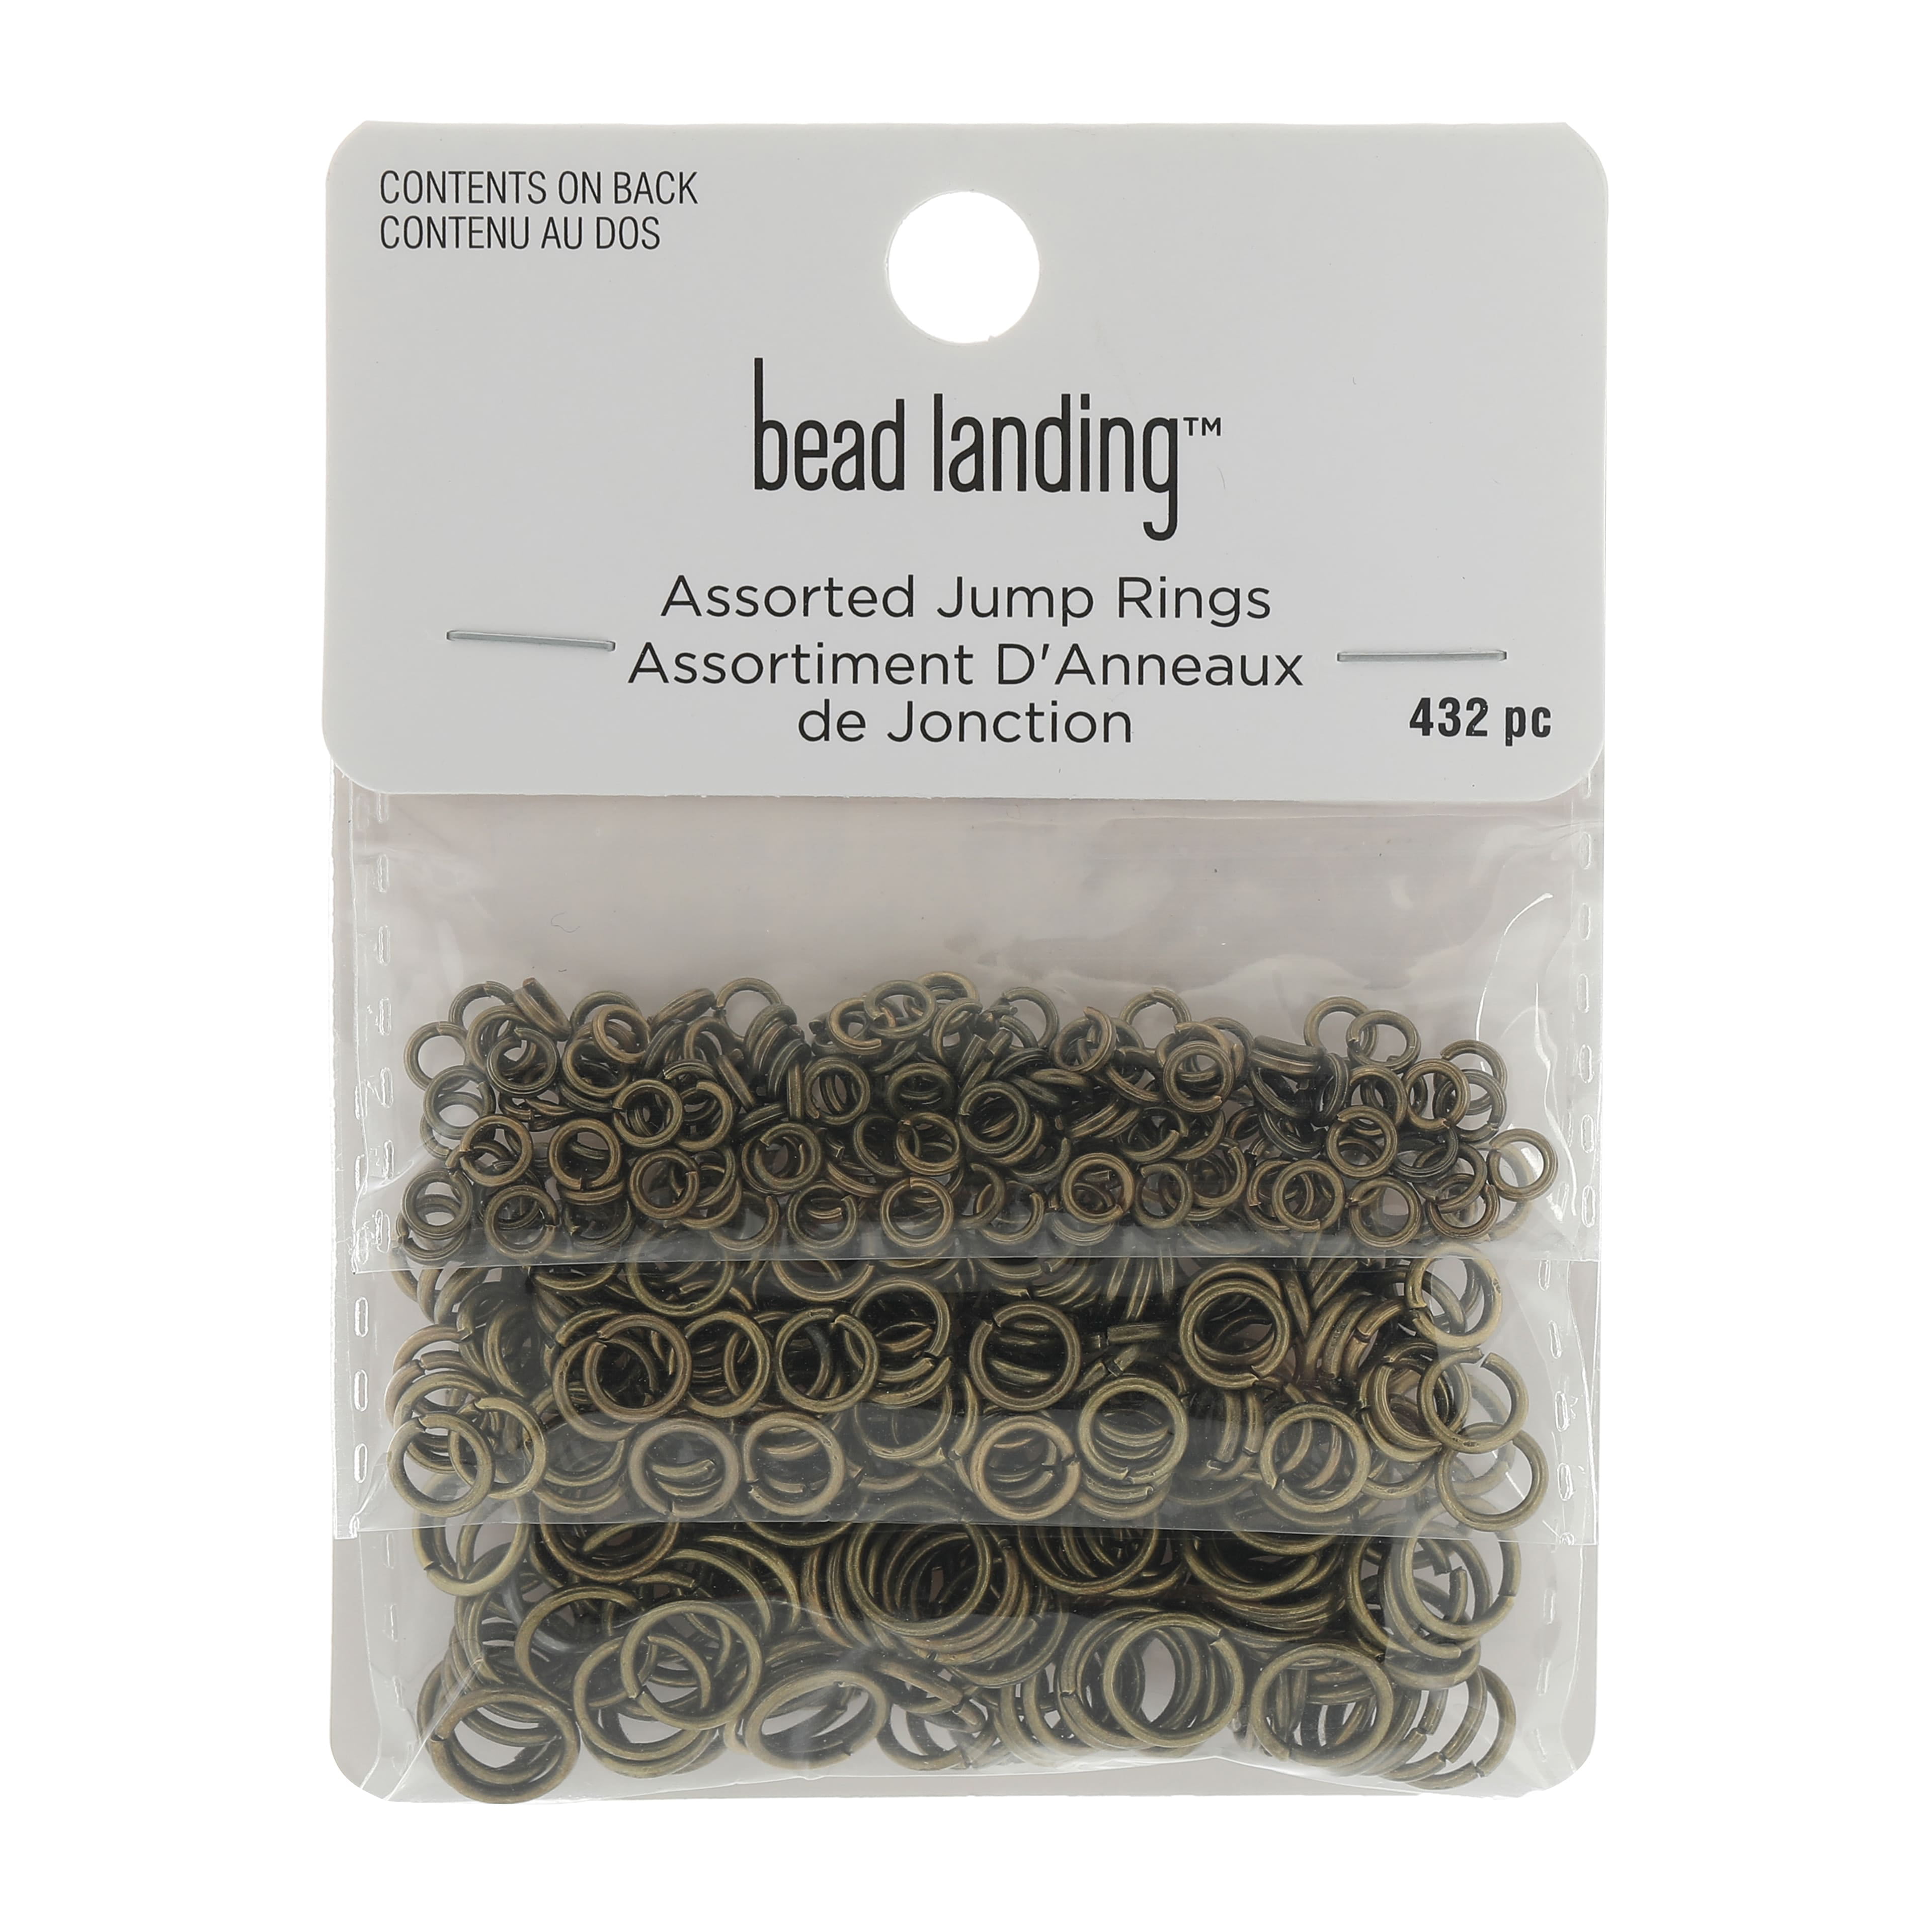 Finding Starter Kit by Bead Landing™